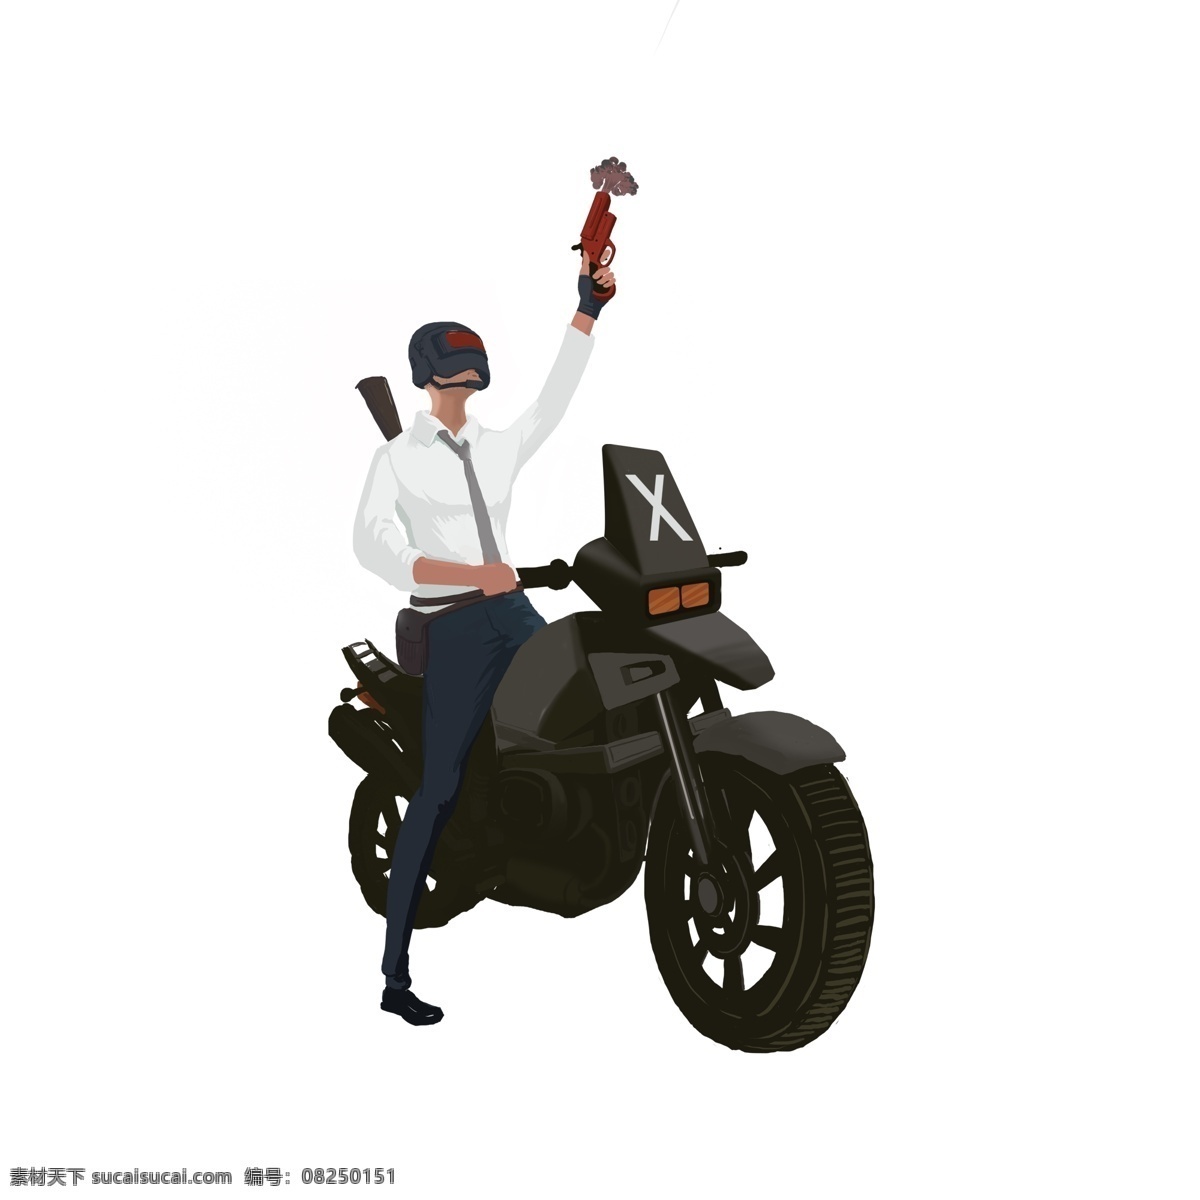 骑 摩托车 吃 鸡 少年 卡通 人物 插画 手绘 手枪 吃鸡游戏